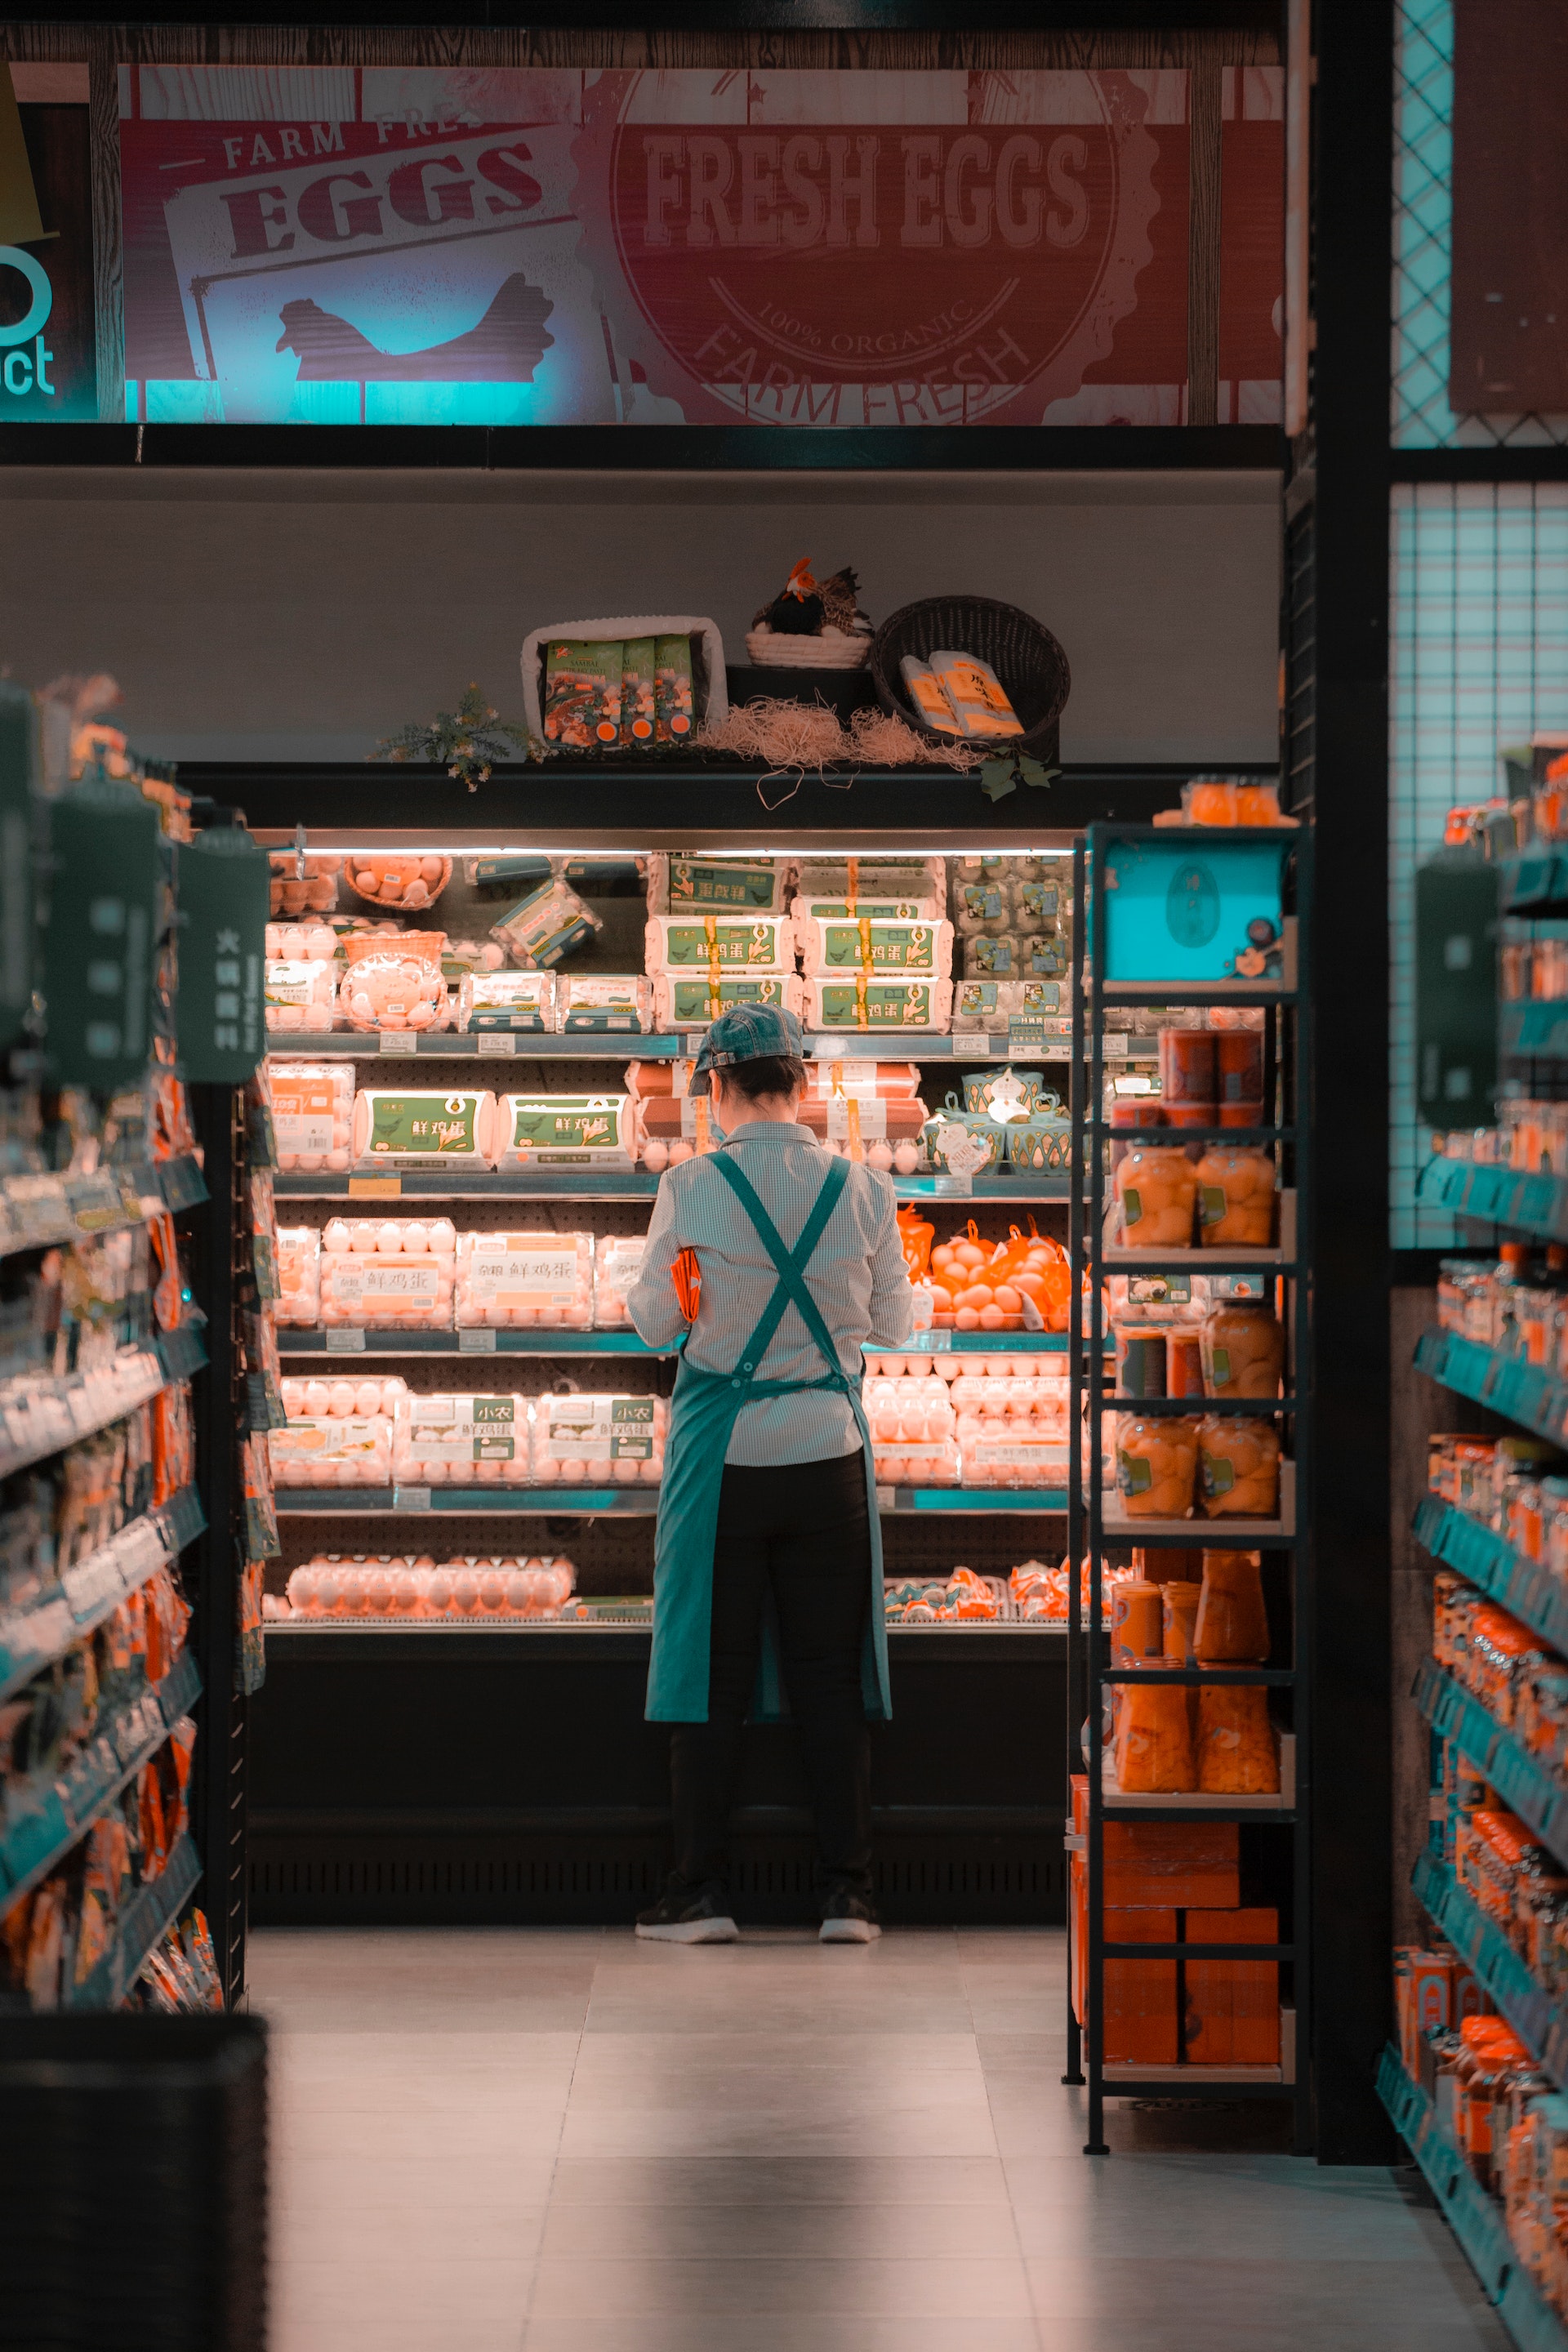 Un empleado de supermercado cerca de la nevera | Fuente: Pexels